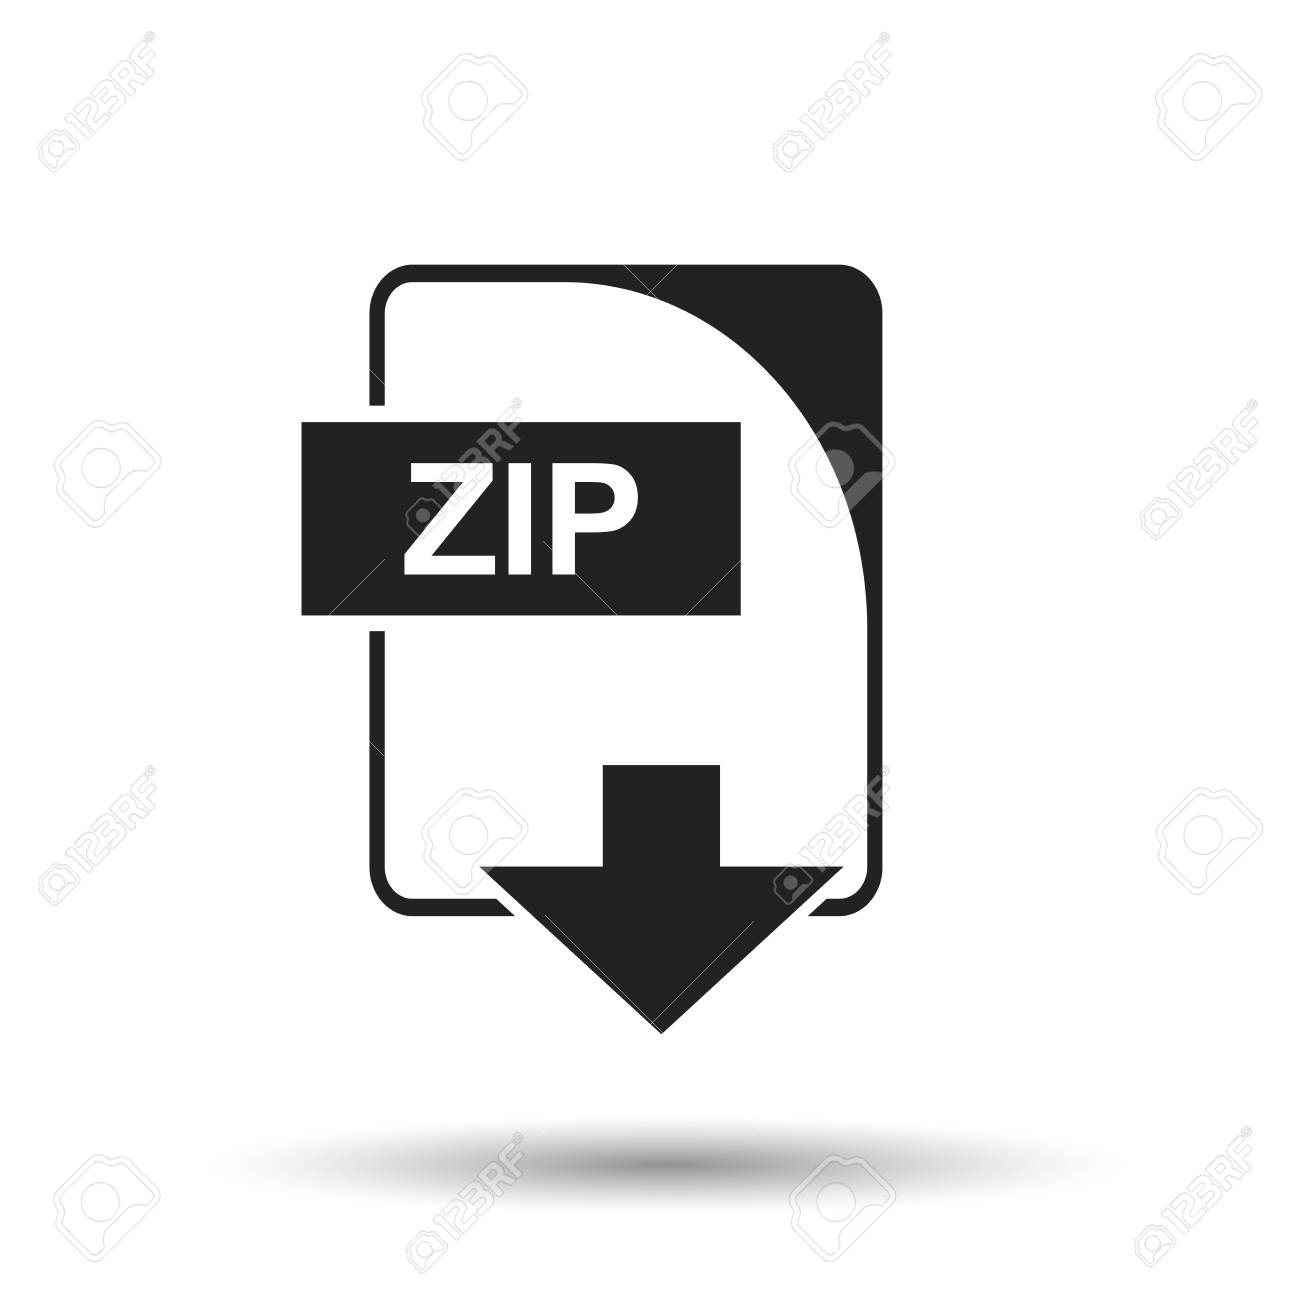 download z zip